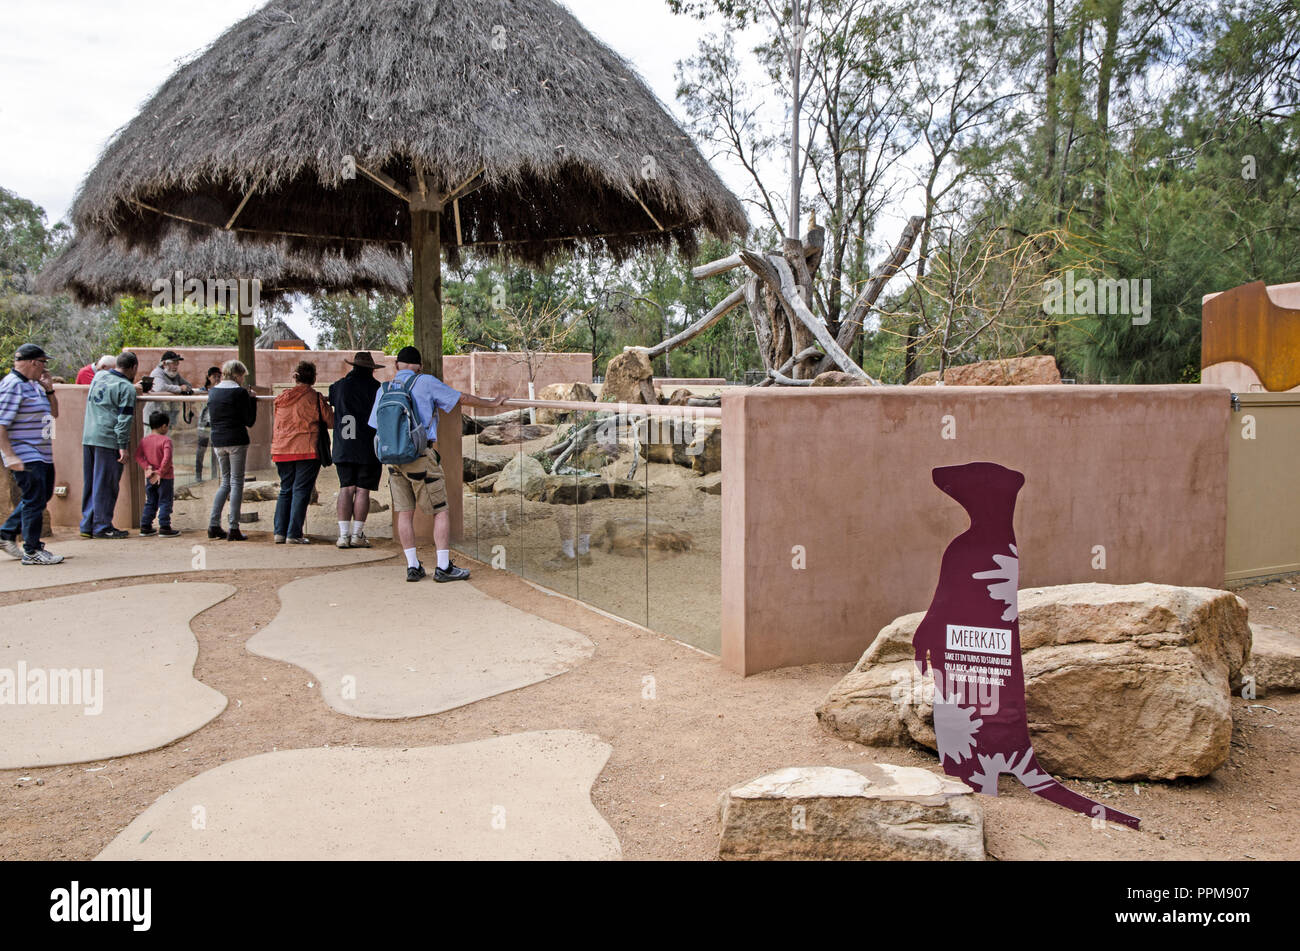 Lo Zoo di Dubbo visitatori guardando meerkats nel loro recinto. Foto Stock